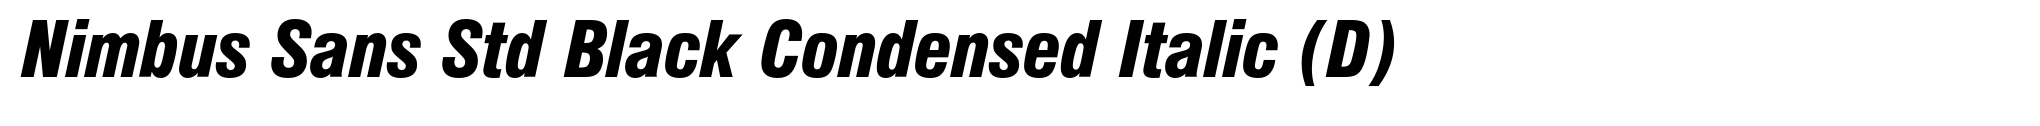 Nimbus Sans Std Black Condensed Italic (D) image